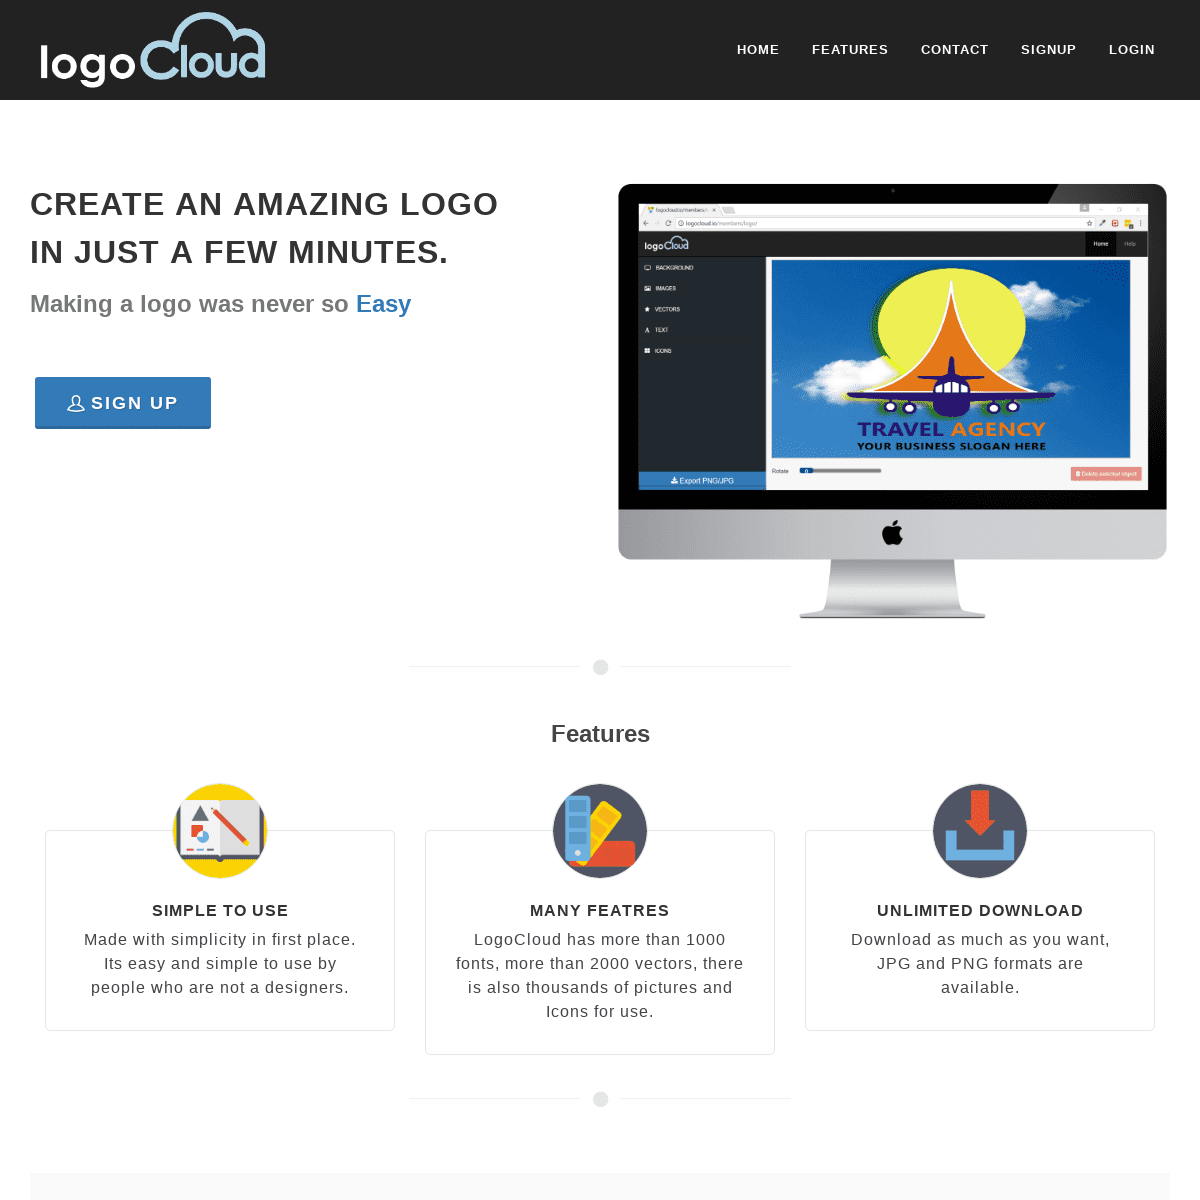 LogoCloud